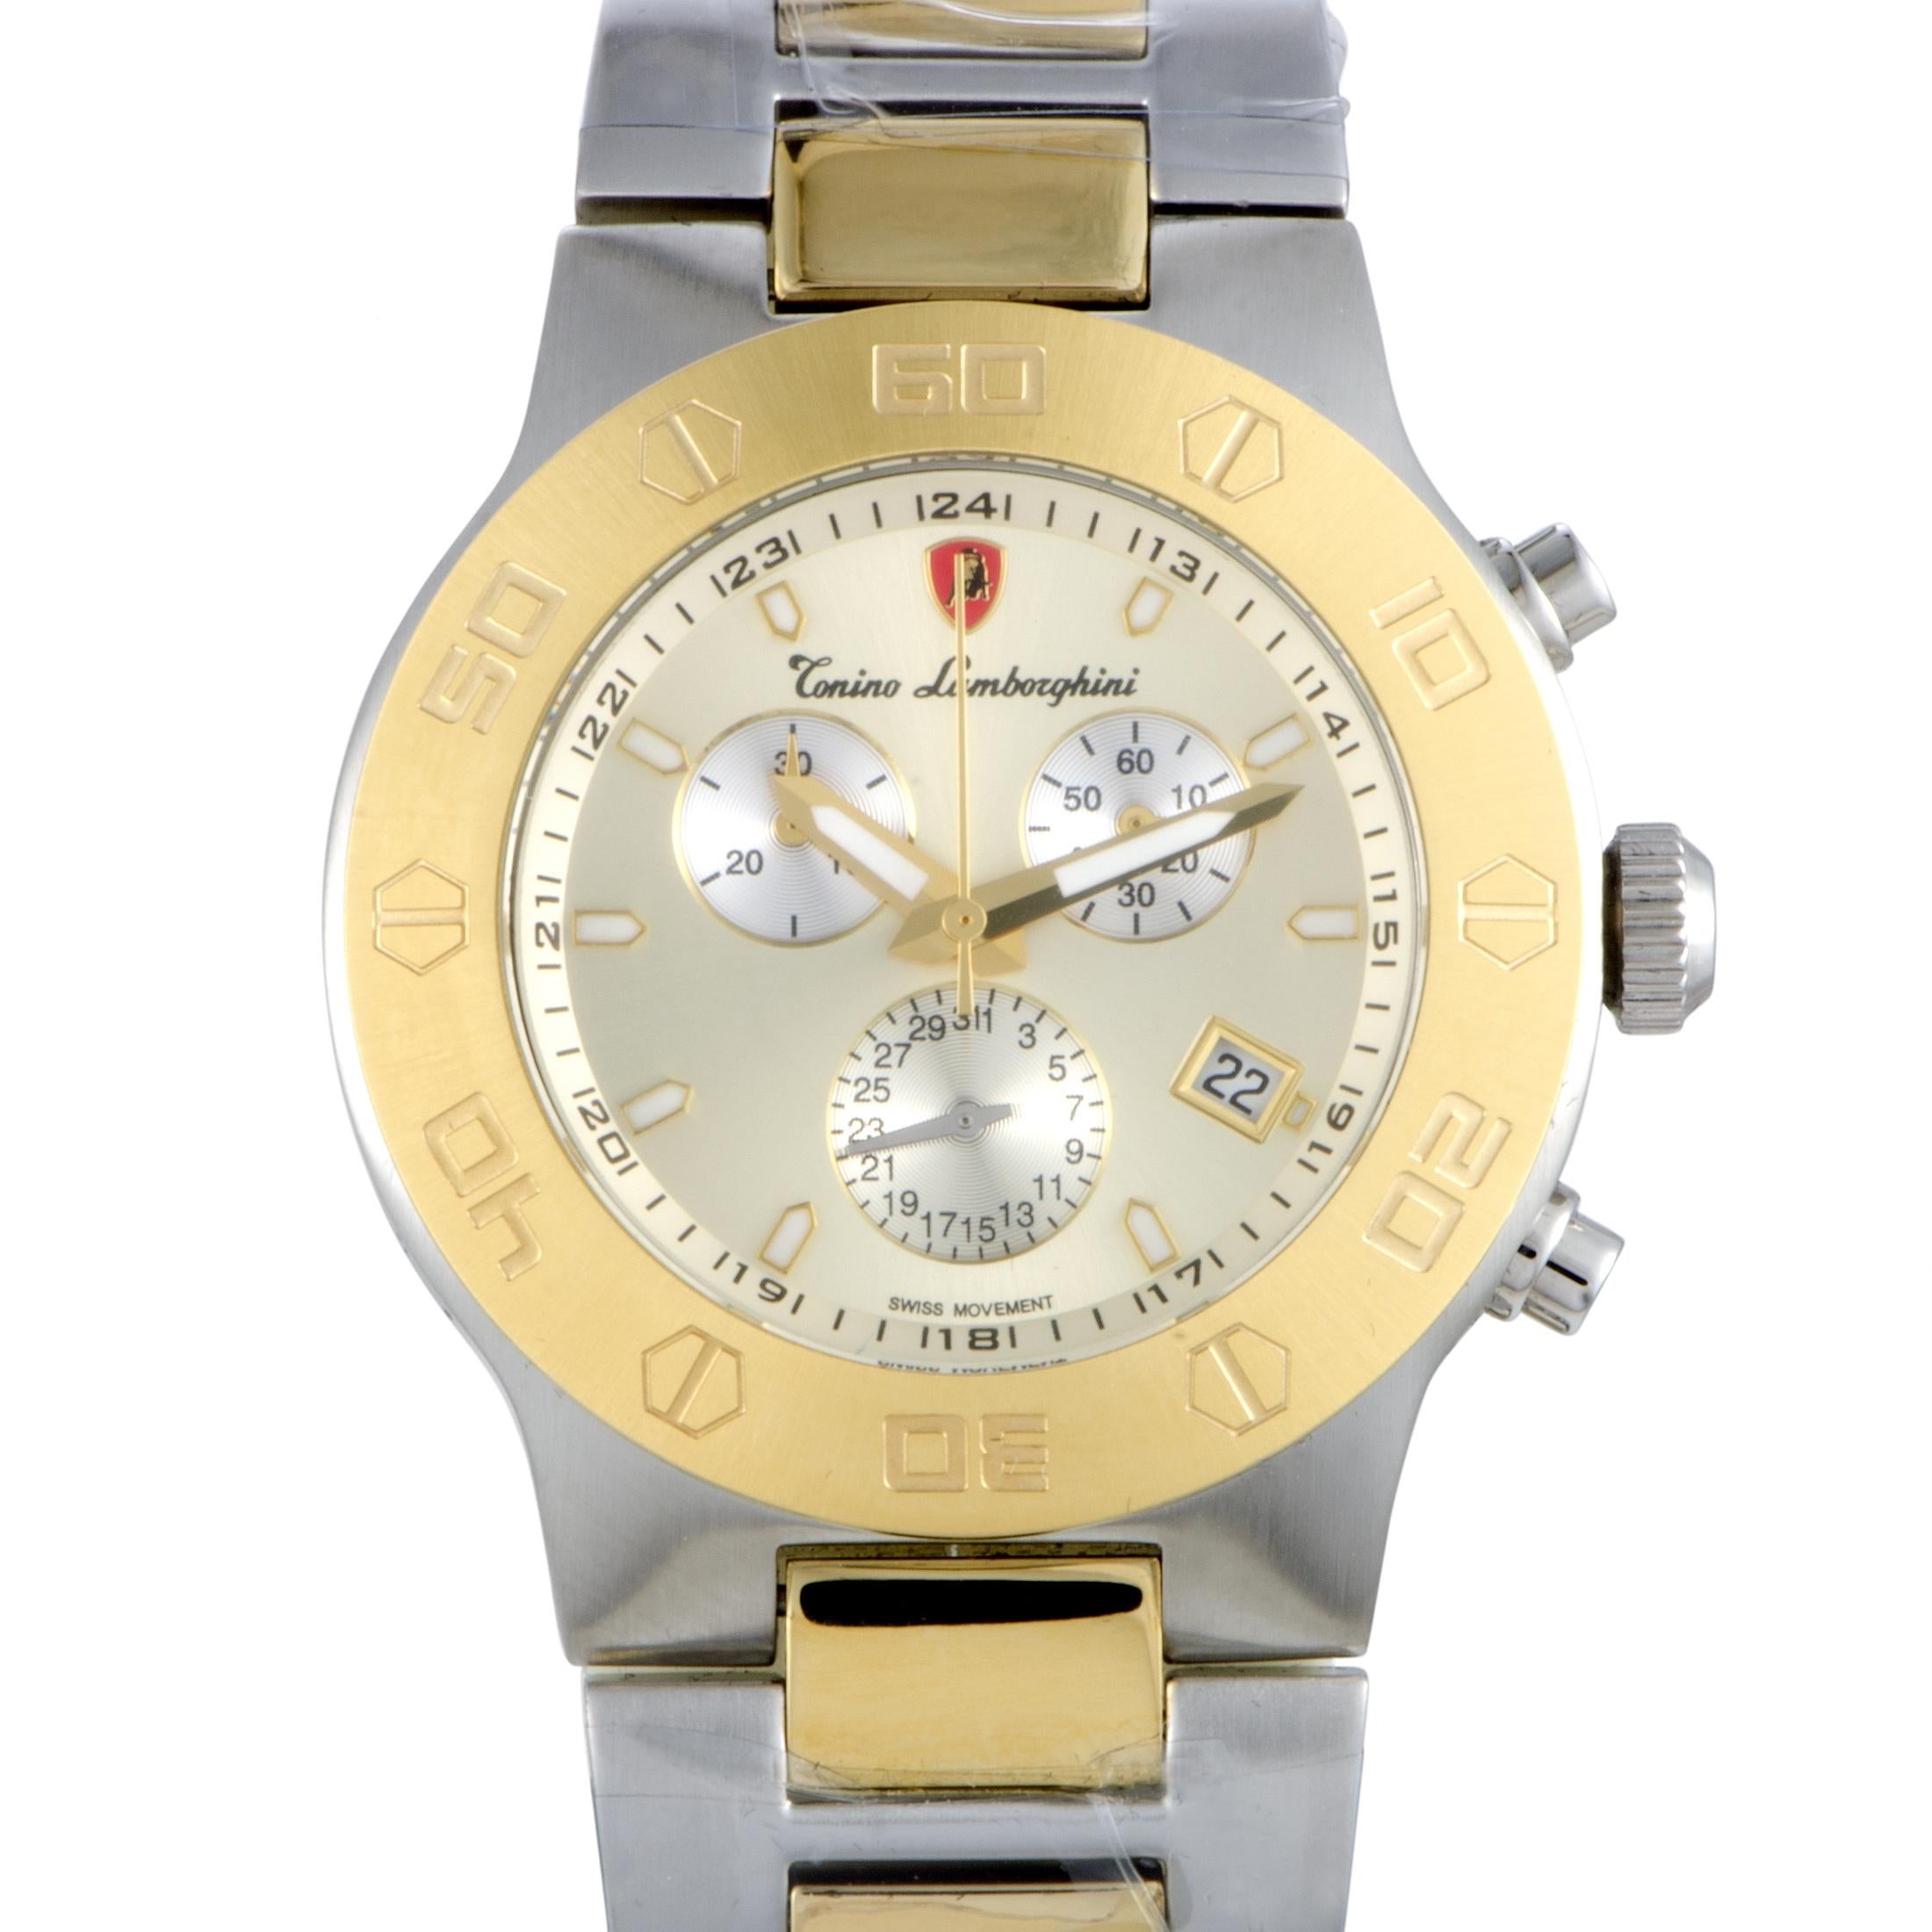 Tonino Lamborghini EN Models Men's Quartz Chronograph Watch EN034.306 1